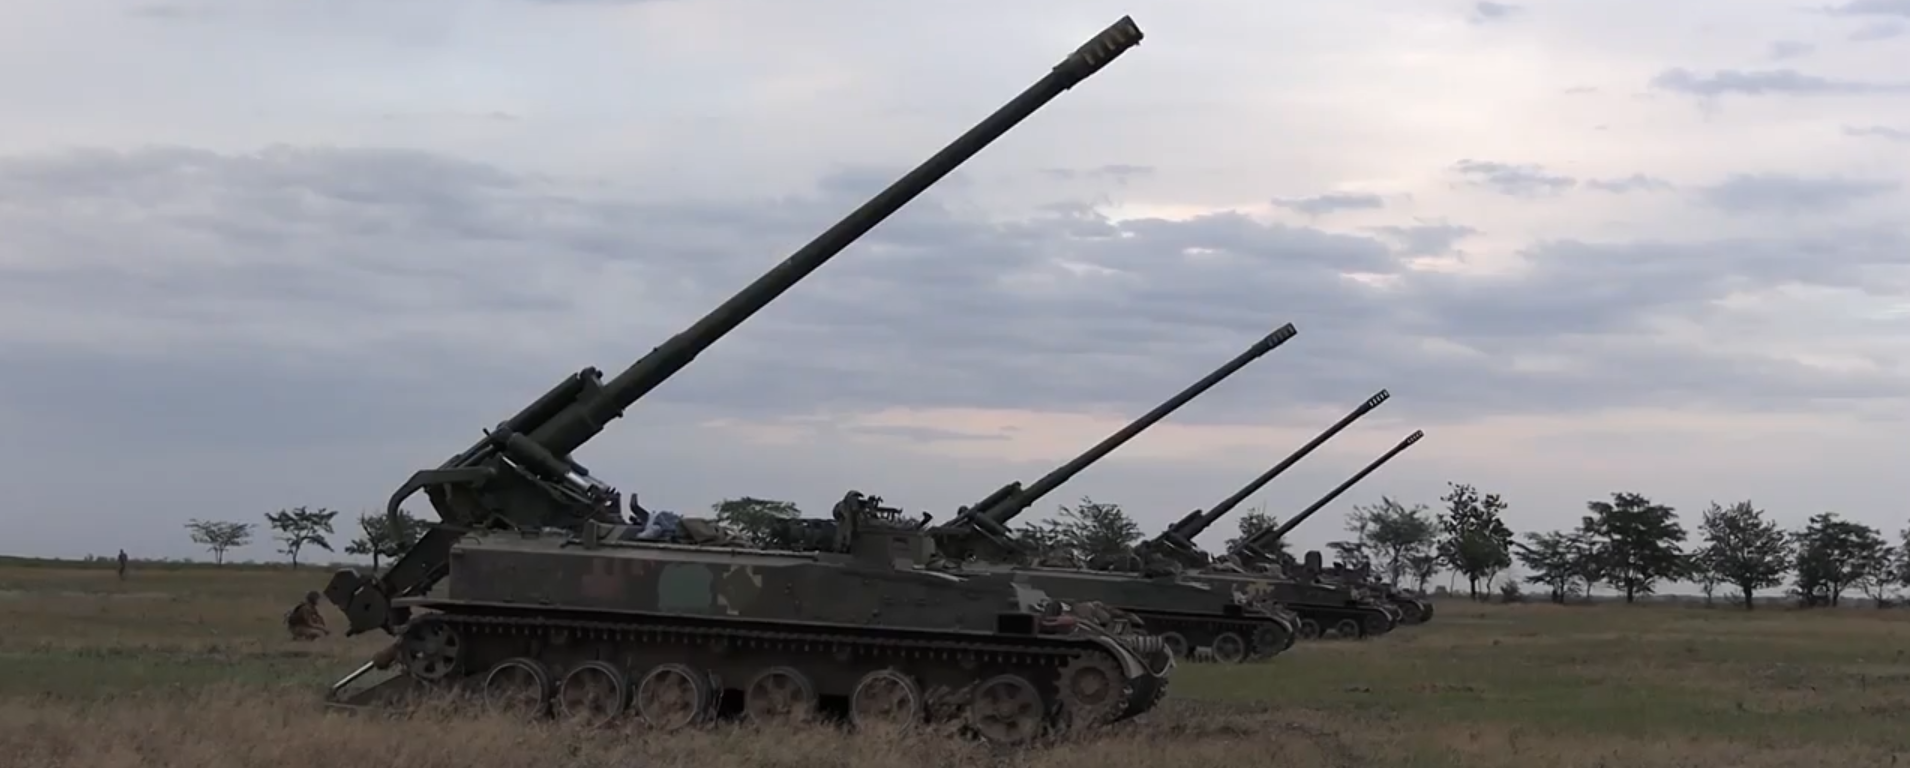 Большие калибры: ВСУ провели масштабные учения артиллерии неподалеку от Крыма